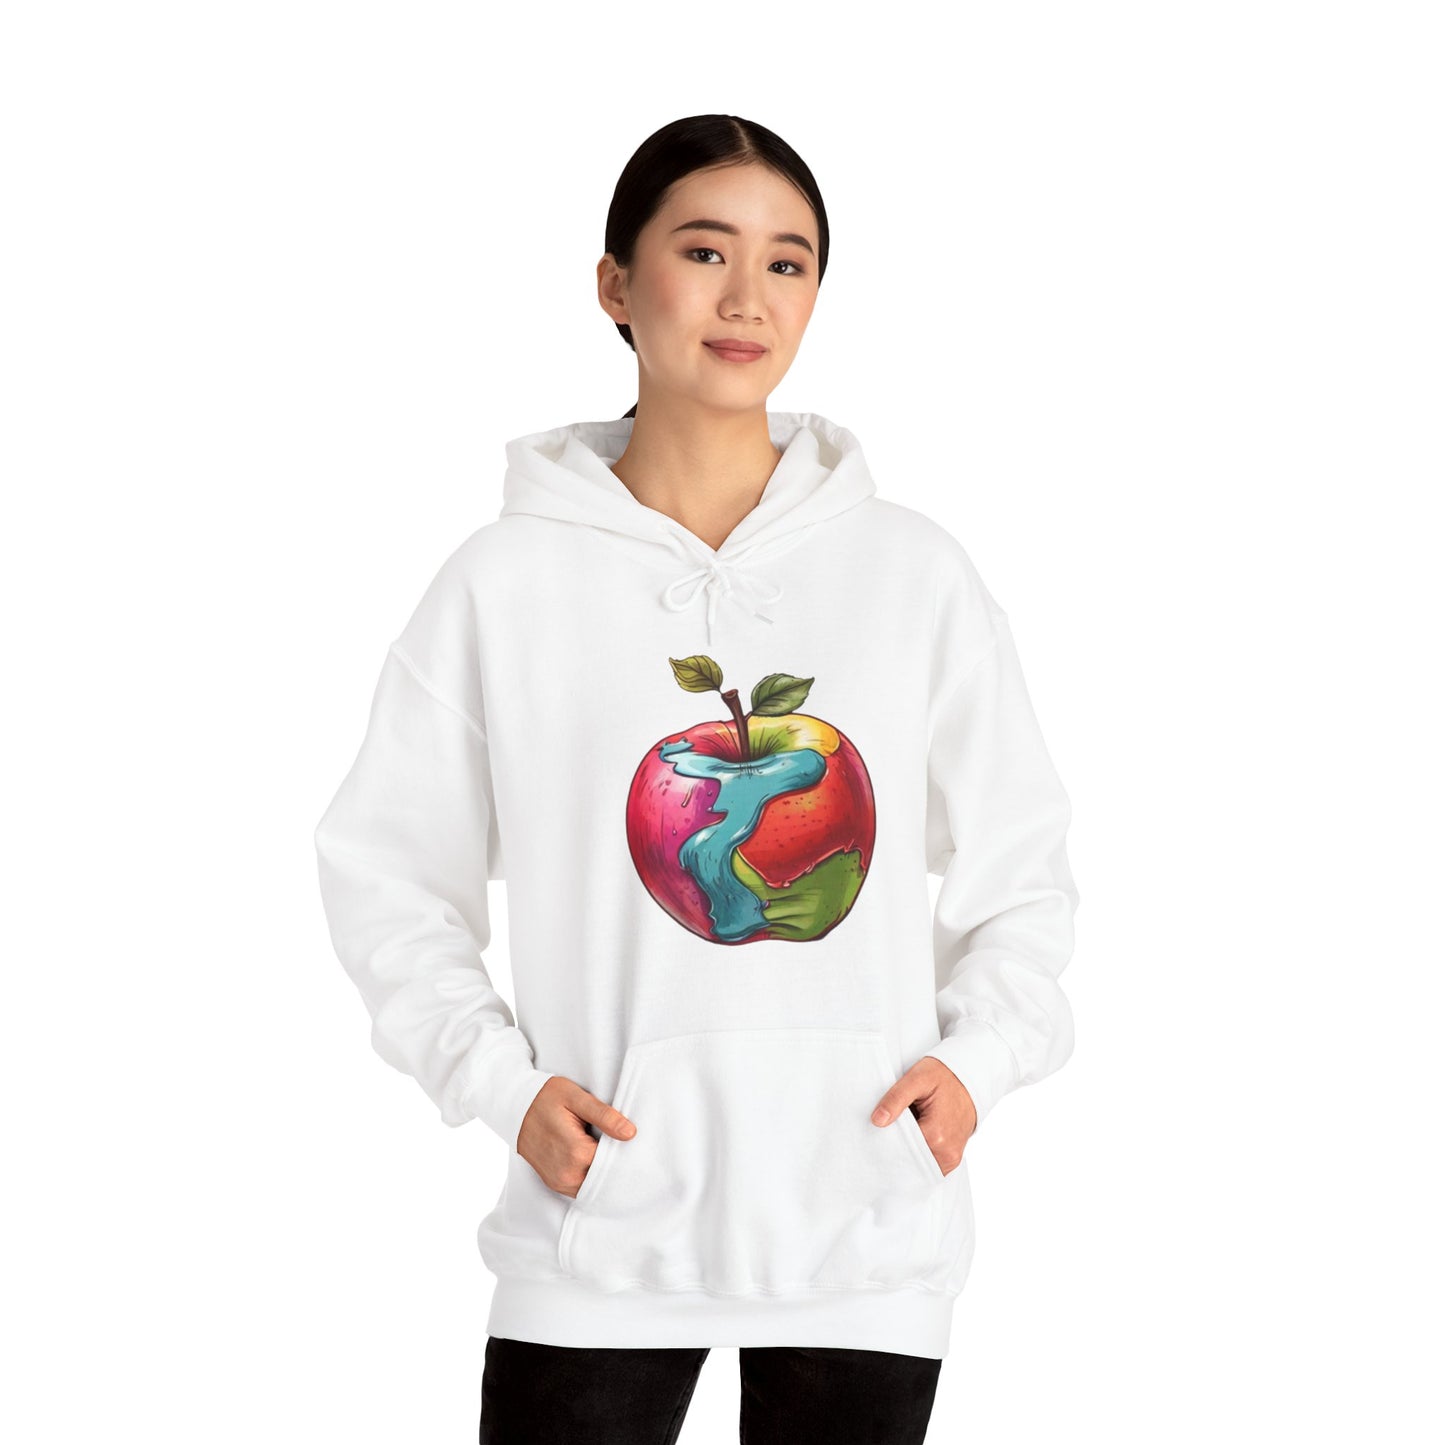 Colourful Apple - Unisex Hooded Sweatshirt